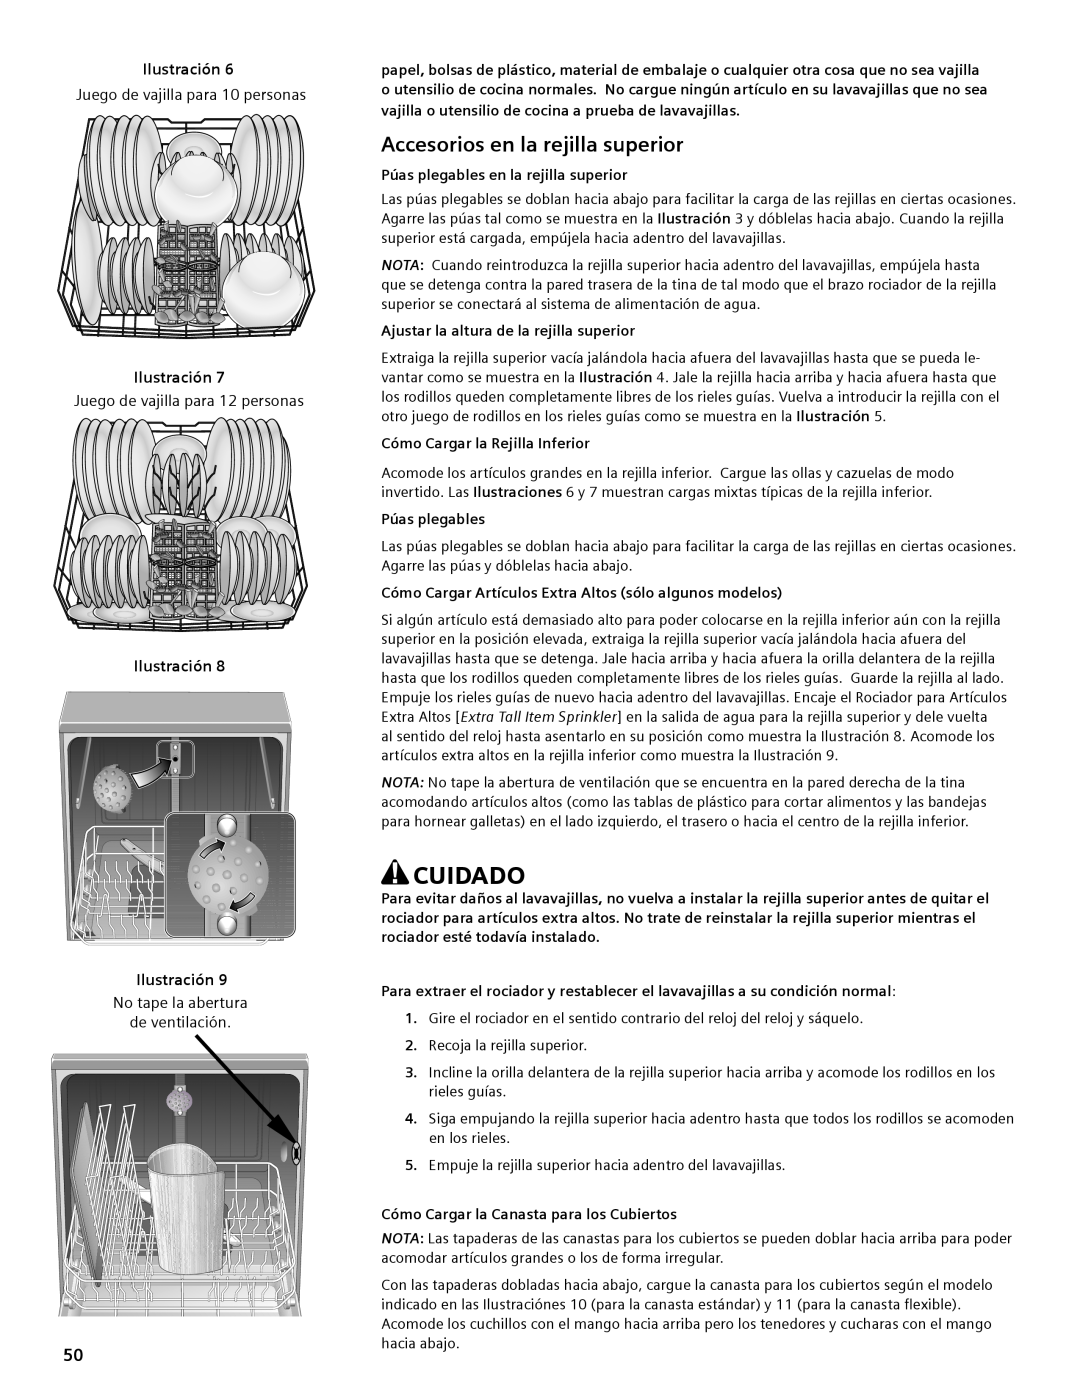 Bosch Appliances SHE44C manual Cuidado, Accesorios en la rejilla superior, Juego de vajilla para 10 personas 